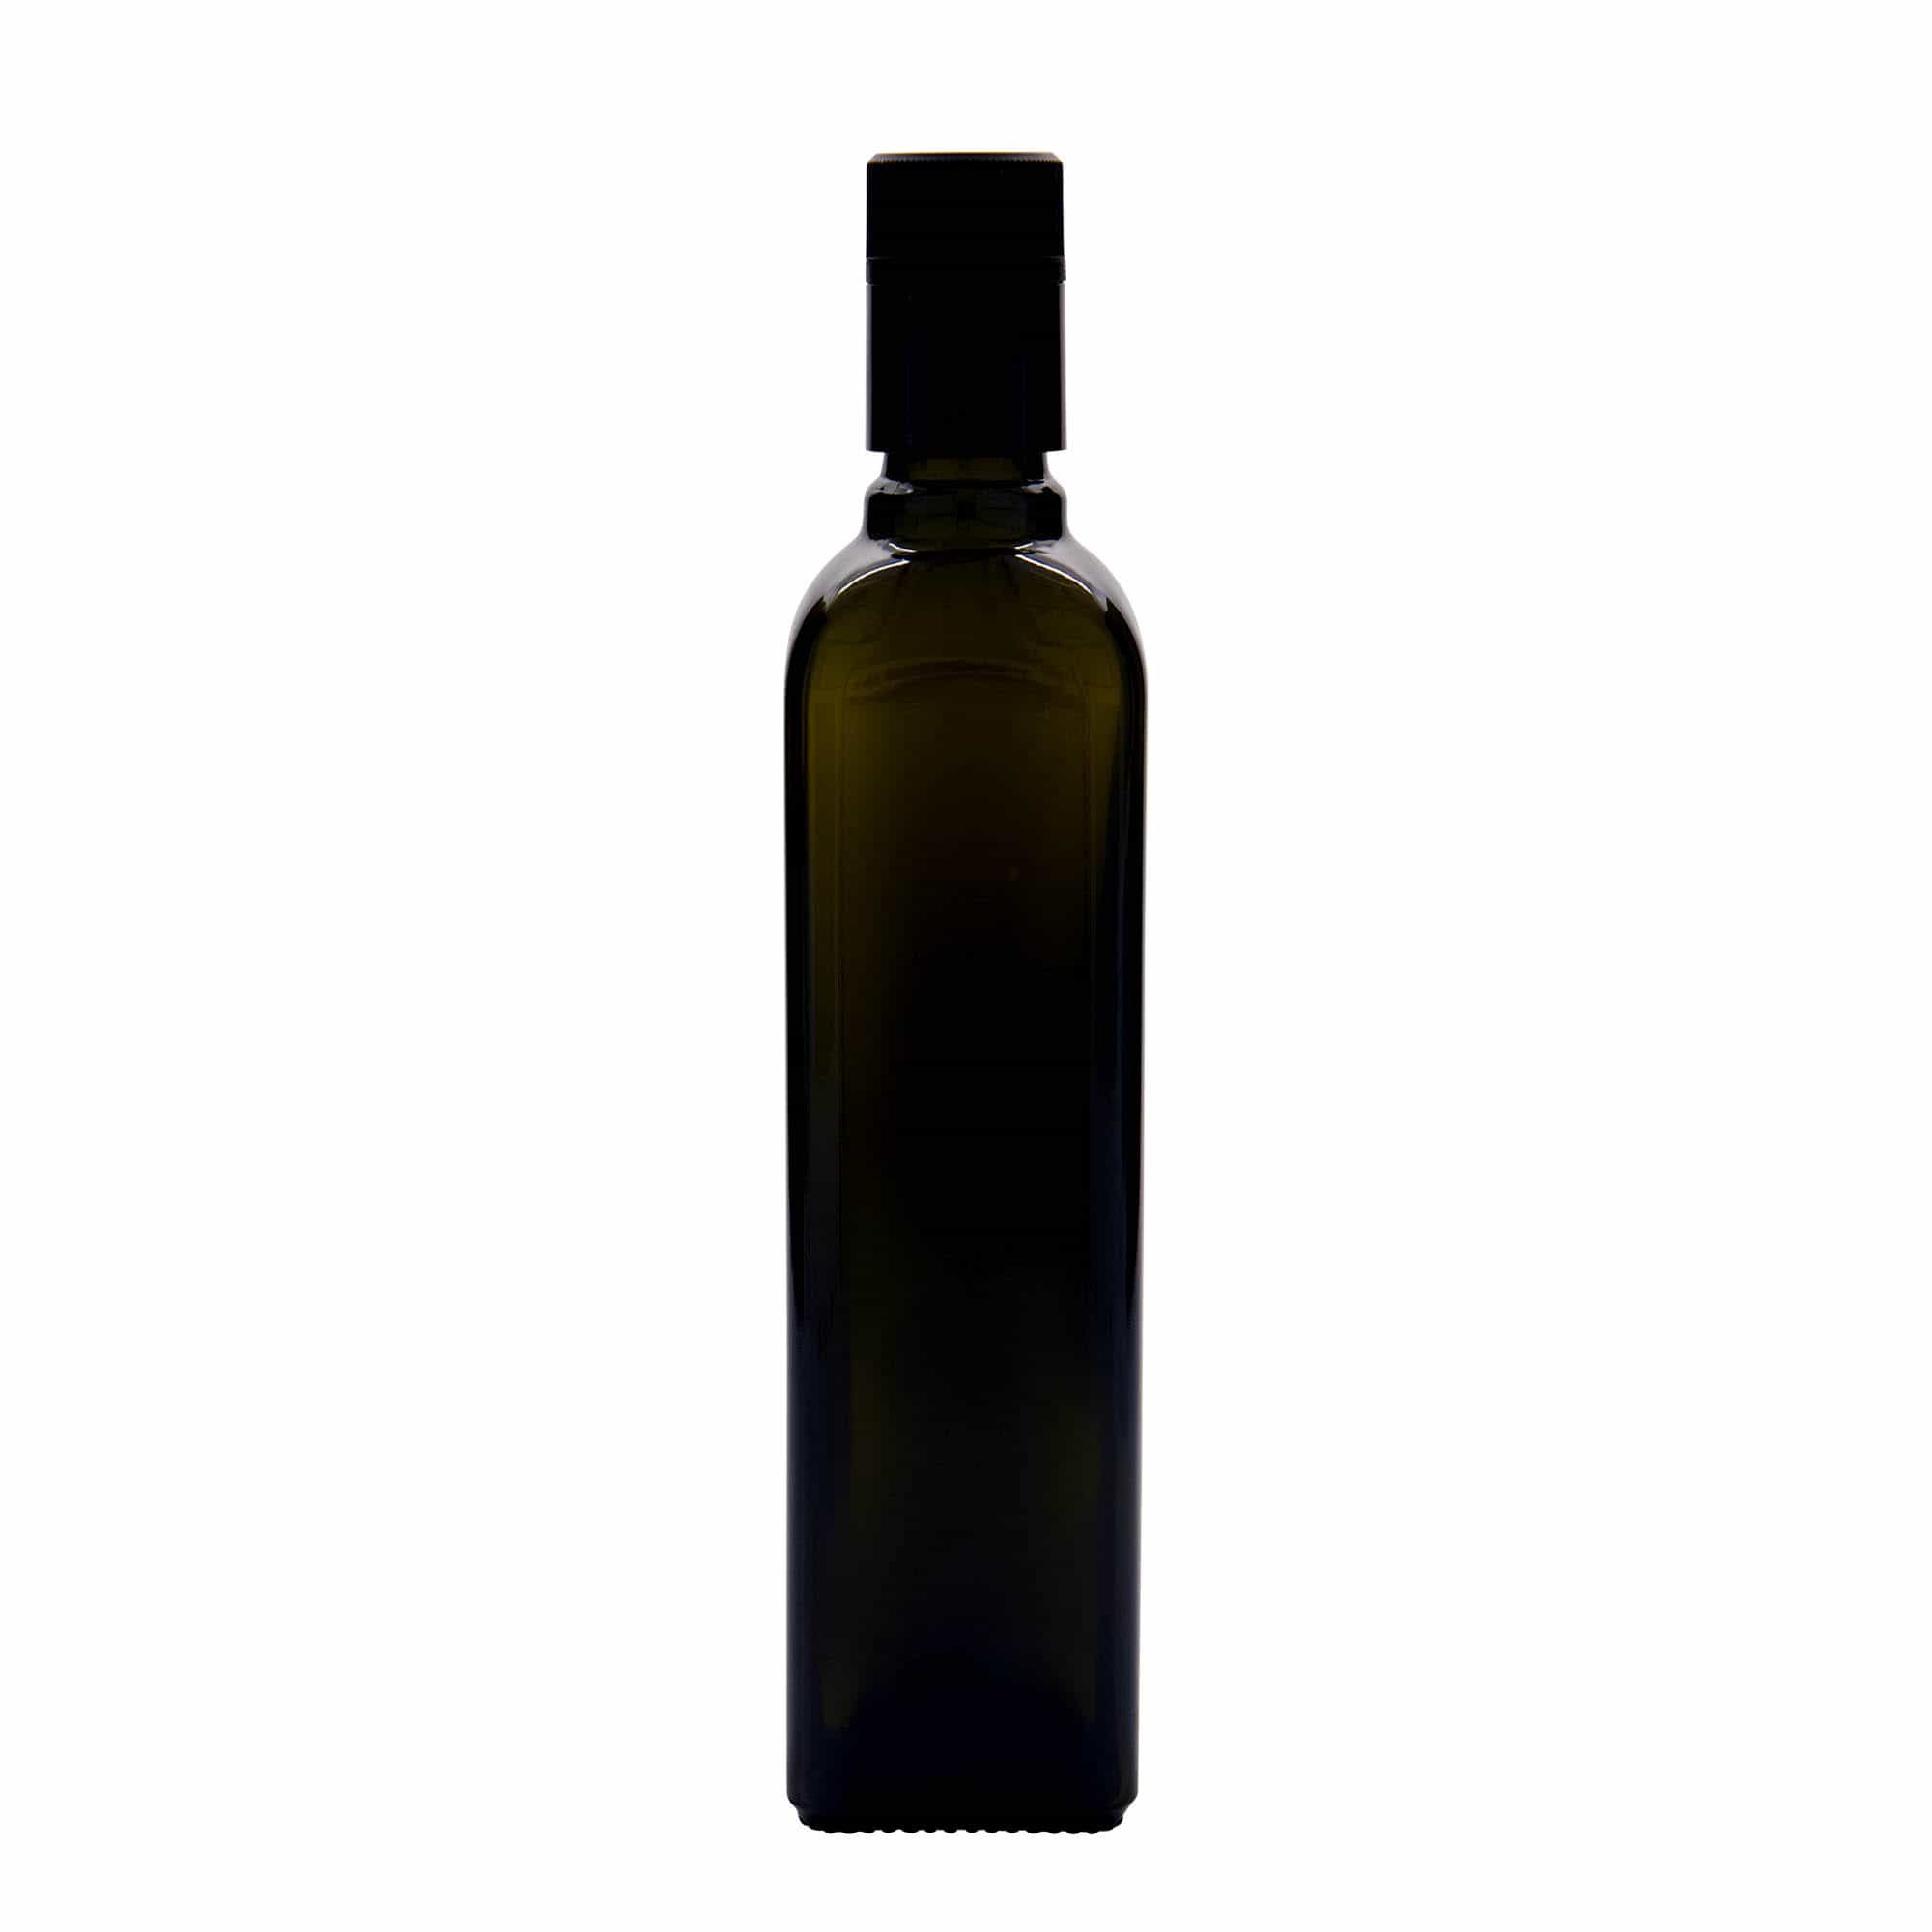 Lahev na ocet/olej 500 ml 'Quadra', sklo, čtvercová, starožitná zelená, ústí: DOP